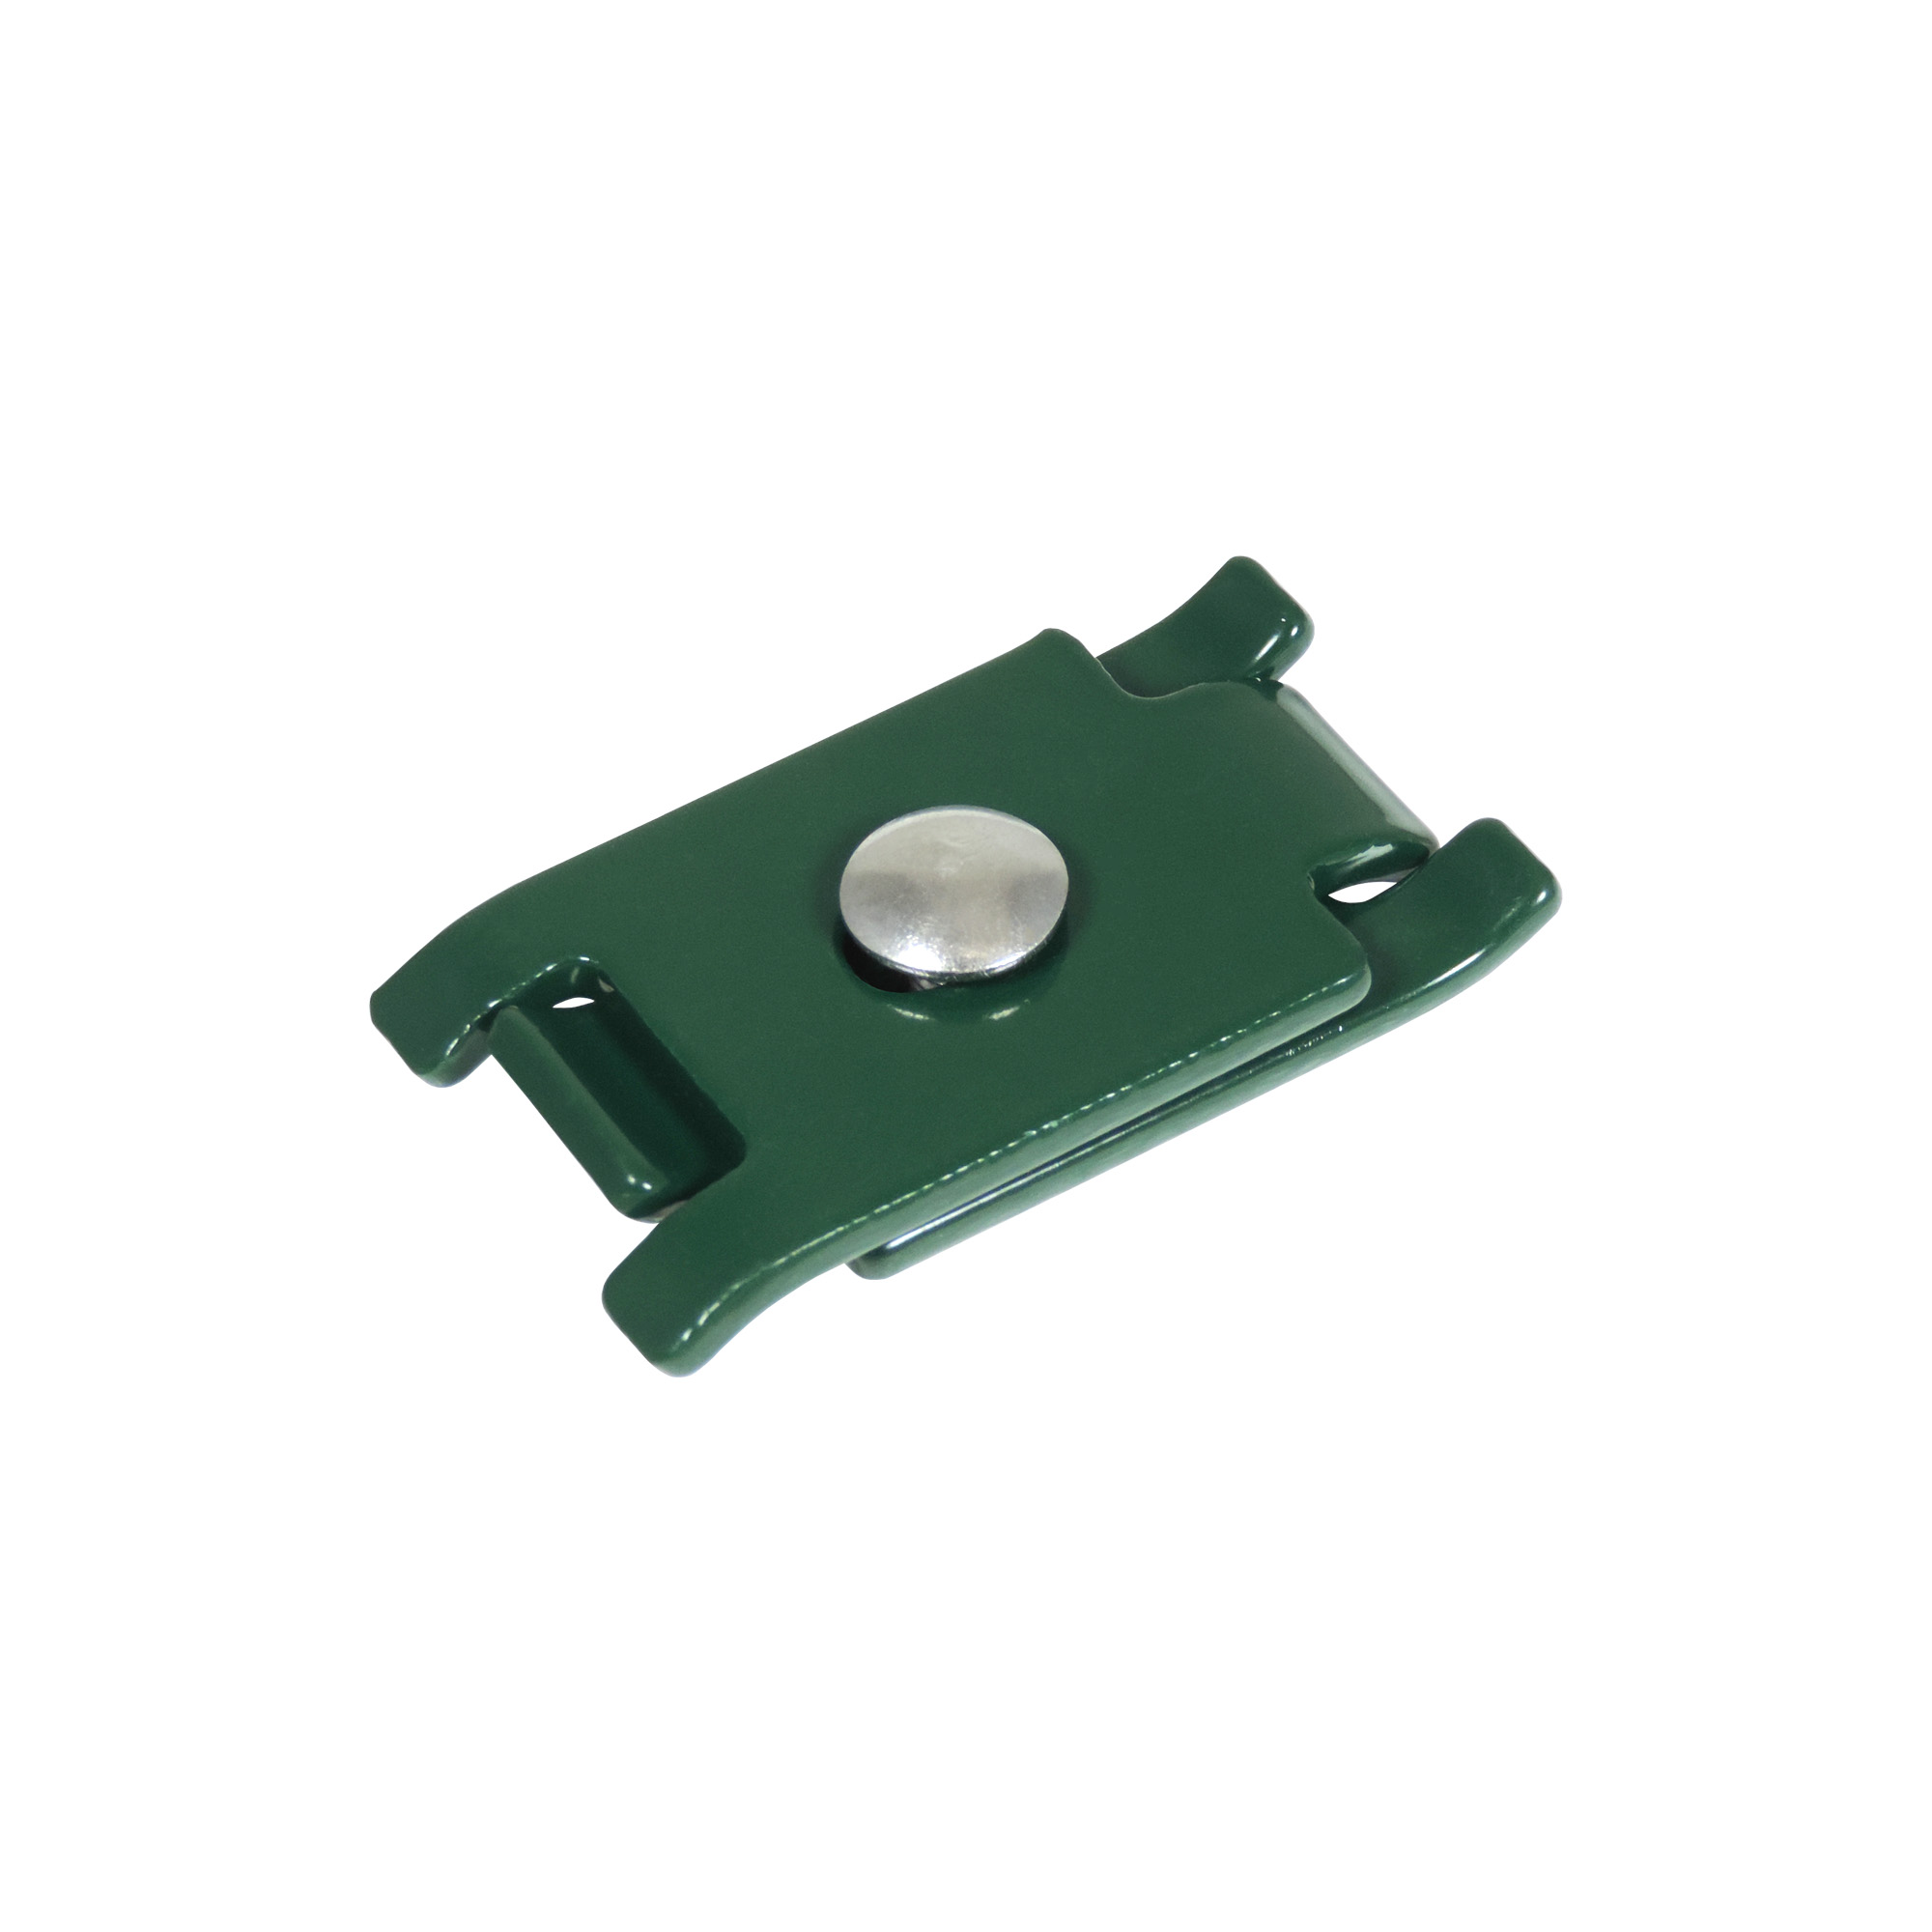 Stabmattenverbinder flach, grün 74 x 40 mm + product picture